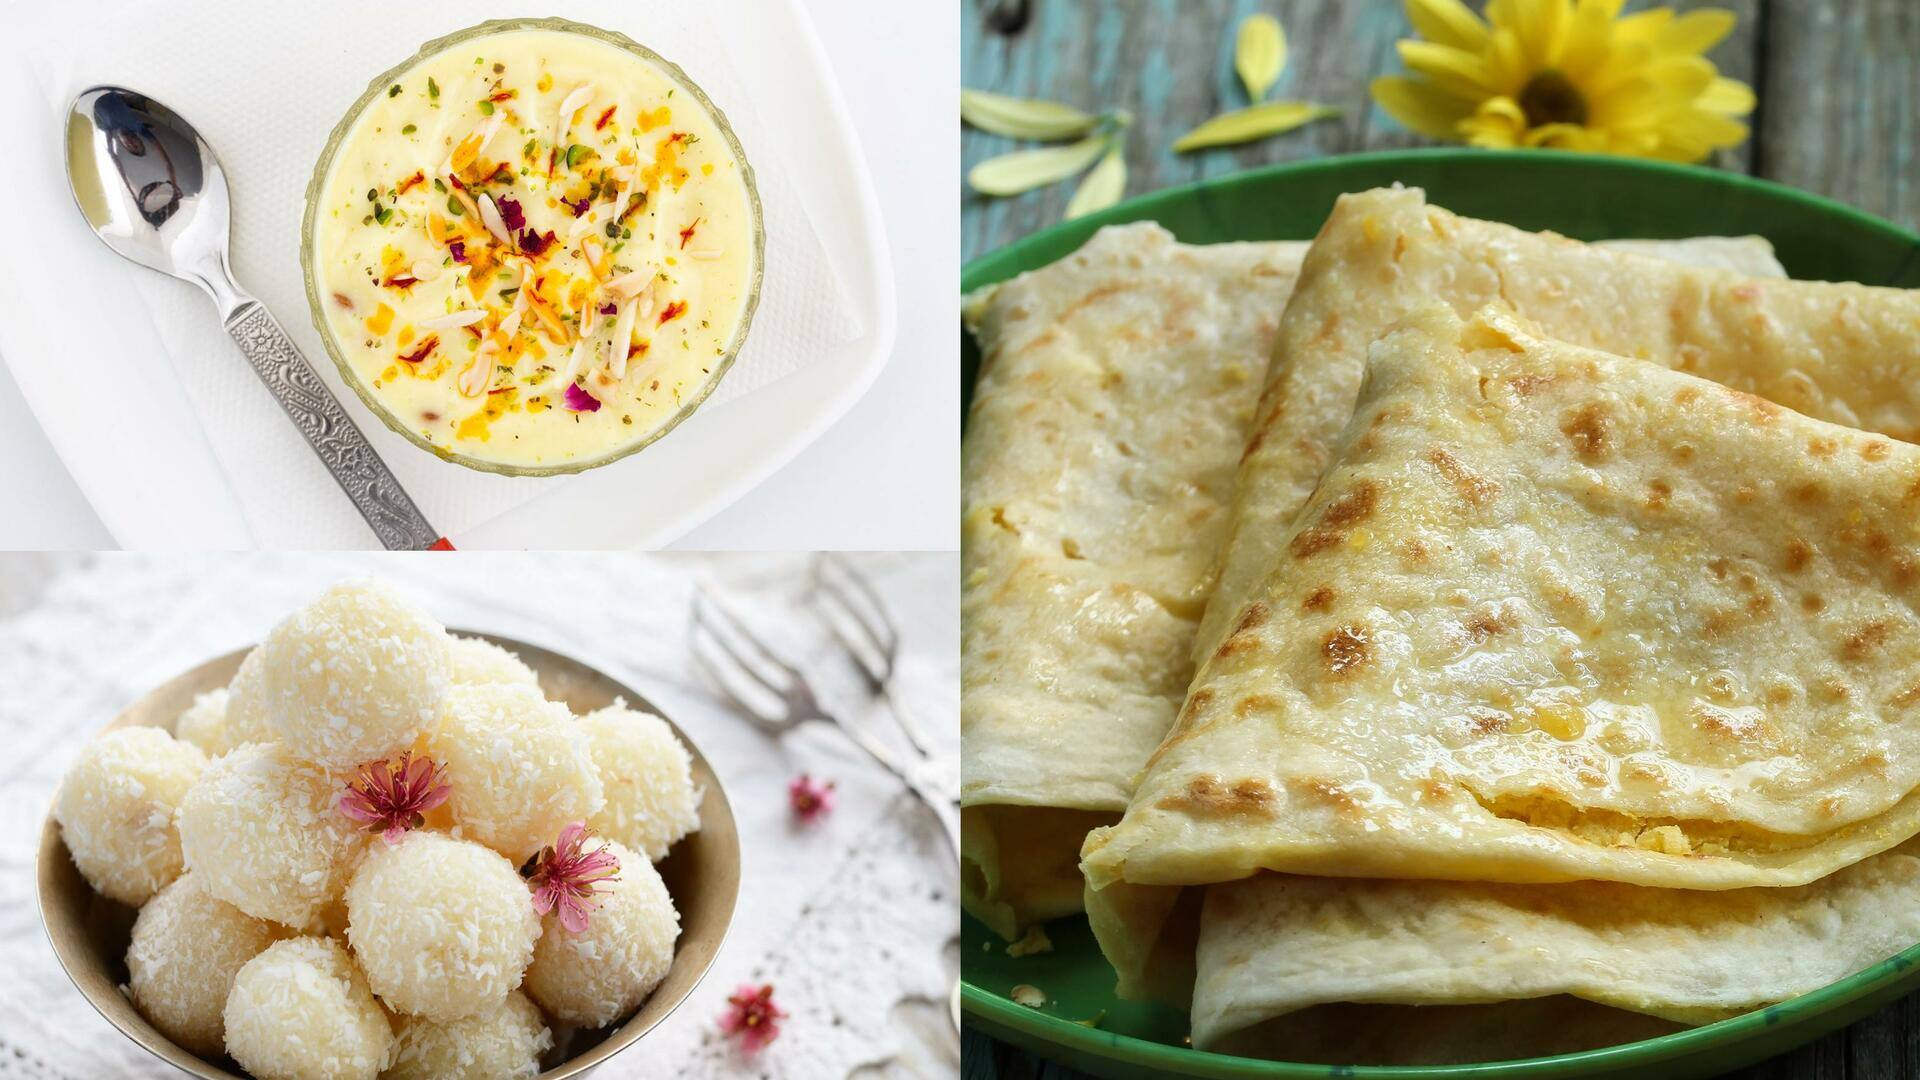 गुड़ी पड़वा 2023: त्यौहार पर बनाकर खाएं ये 5 पारंपरिक व्यंजन, जानिए इनकी रेसिपी